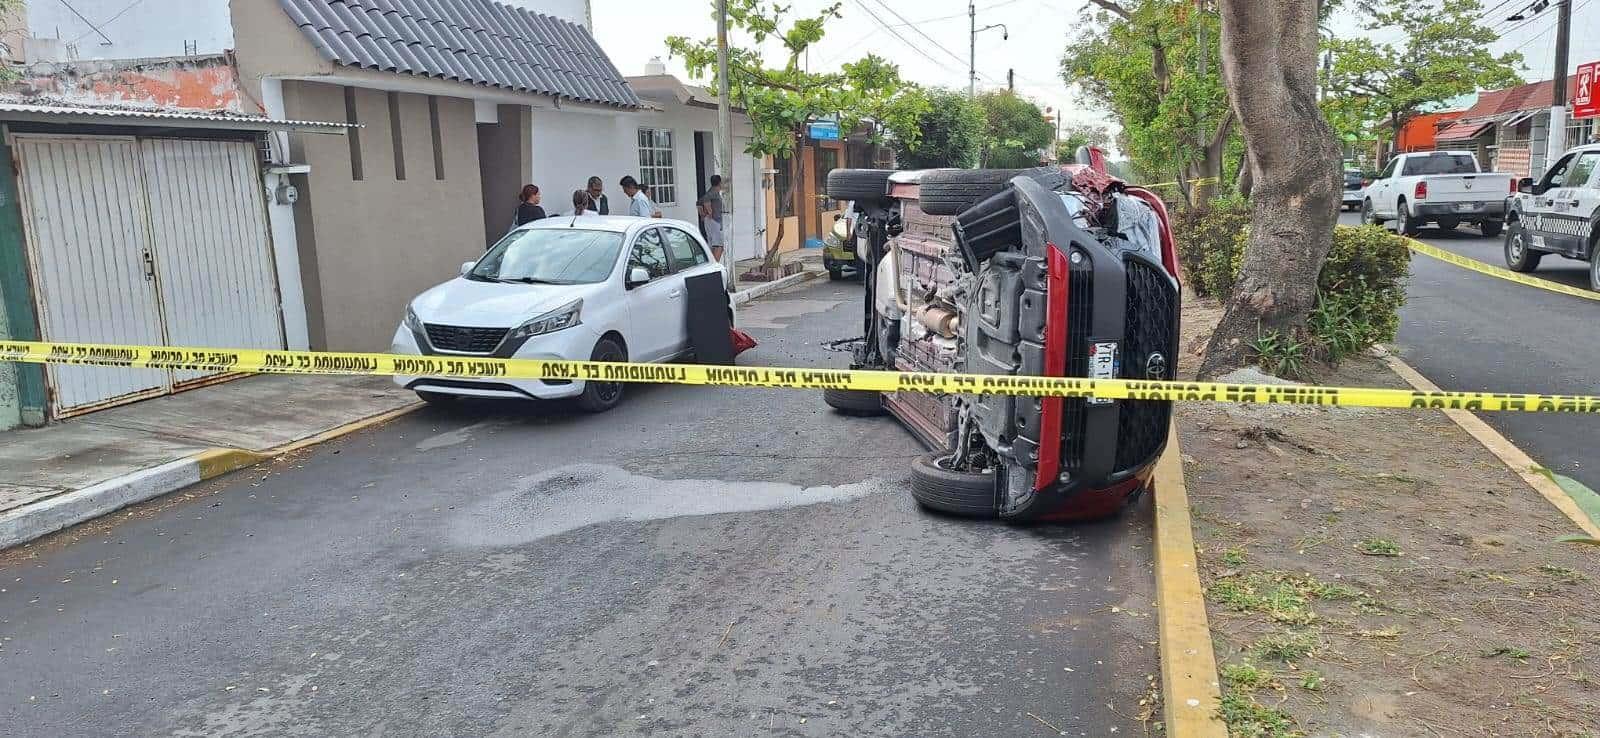 Vuelca su camioneta tras chocar en calles de El Coyol, en Veracruz